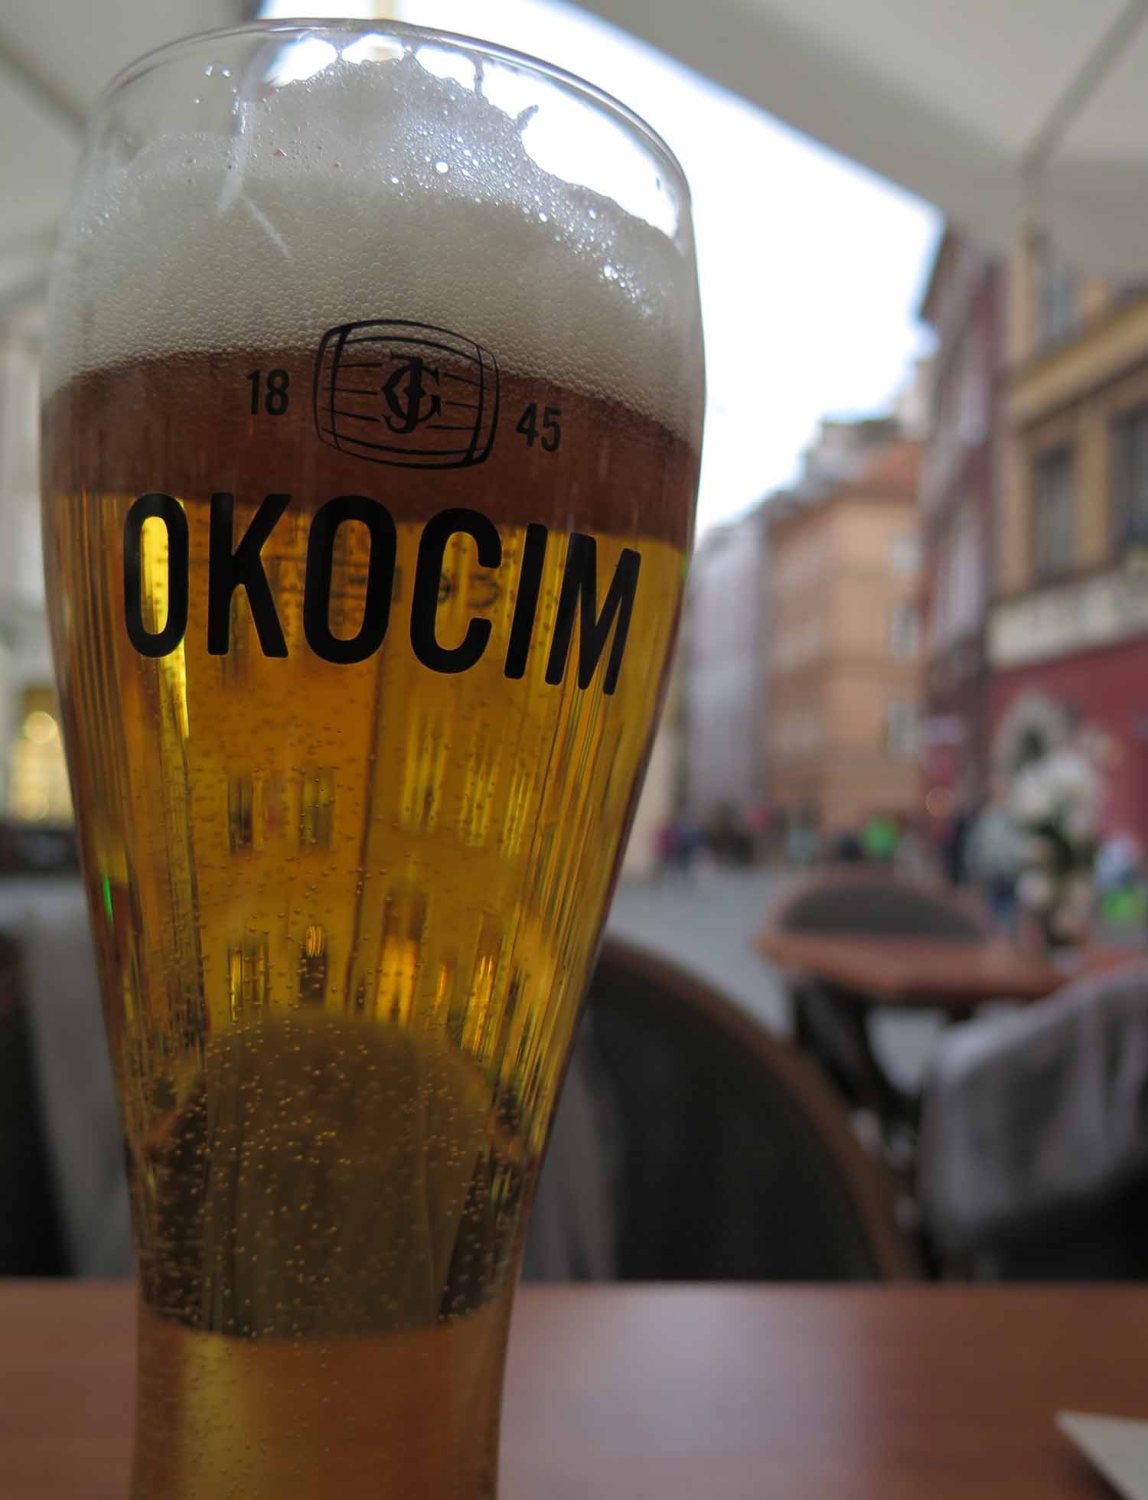 Poland-Warsaw-Beer-Lens